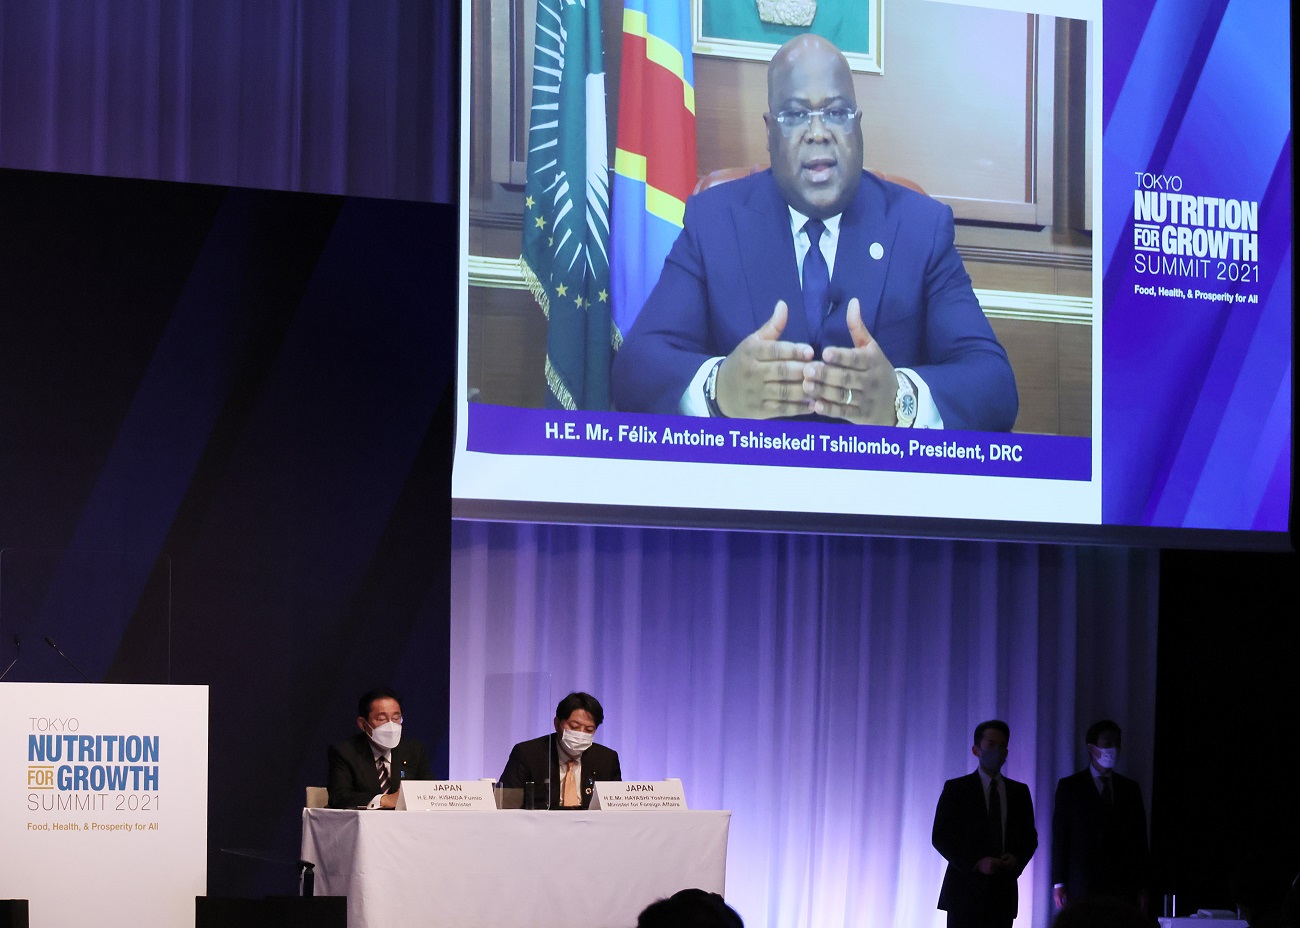 フェリックス・アントワン・チセケディ・チロンボ・コンゴ民主共和国大統領のスピーチを聞く岸田総理